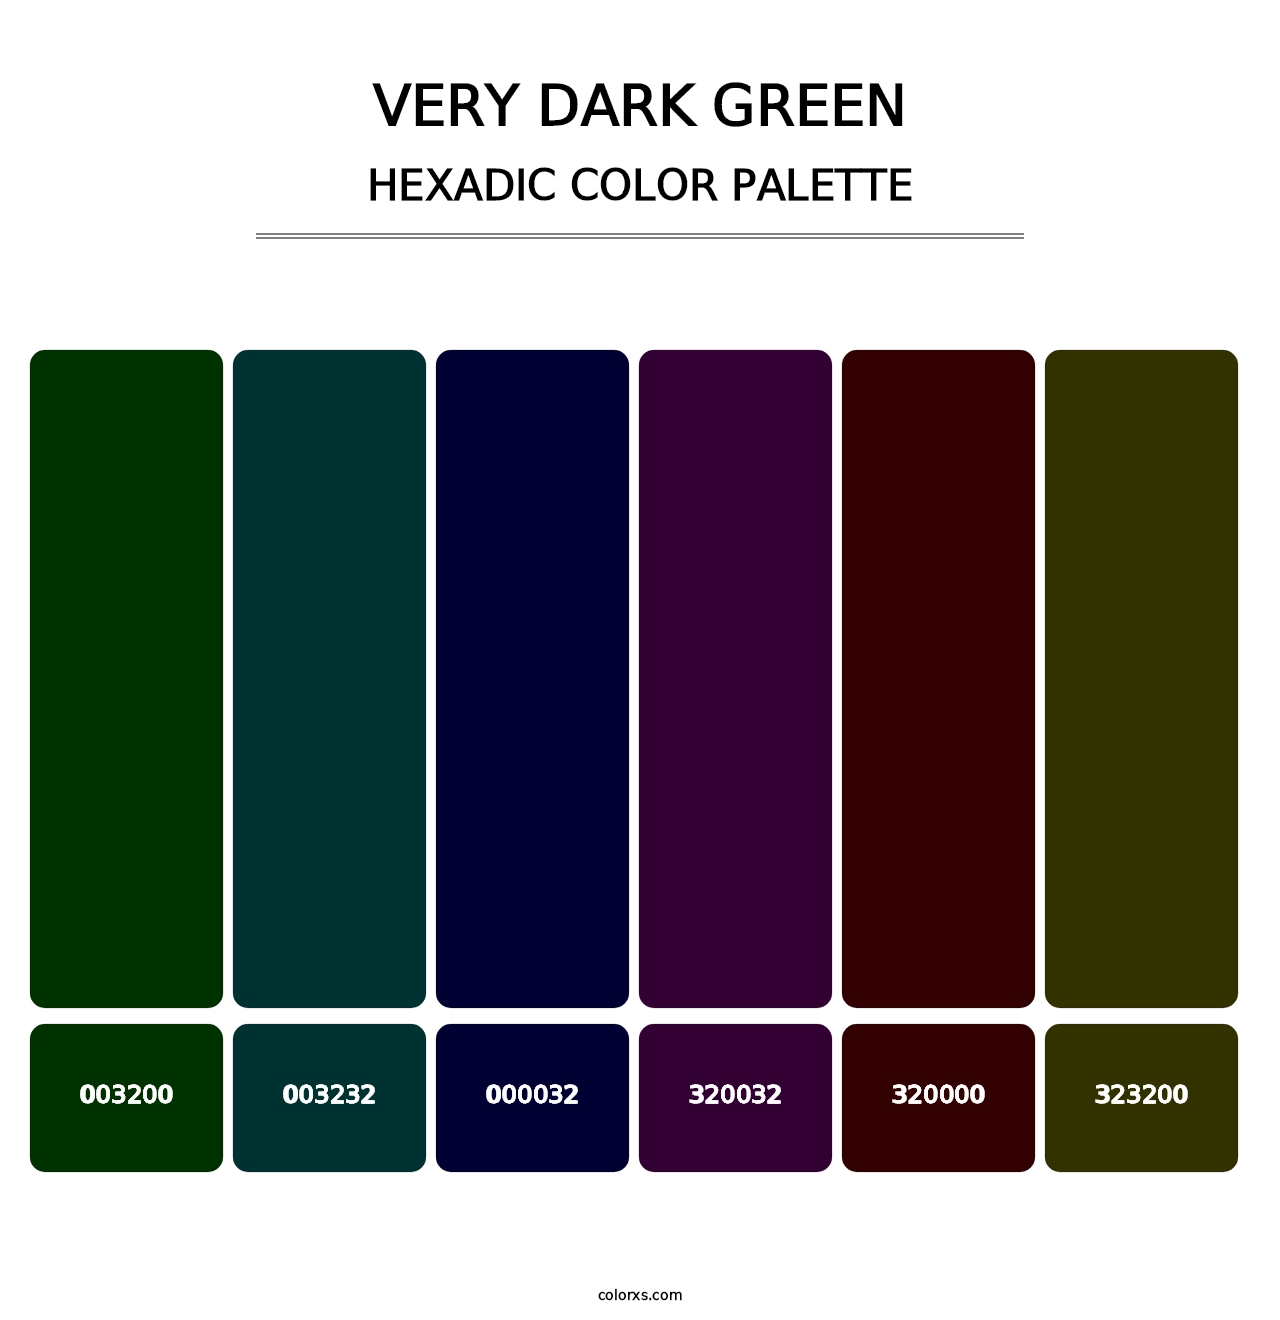 Very Dark Green - Hexadic Color Palette